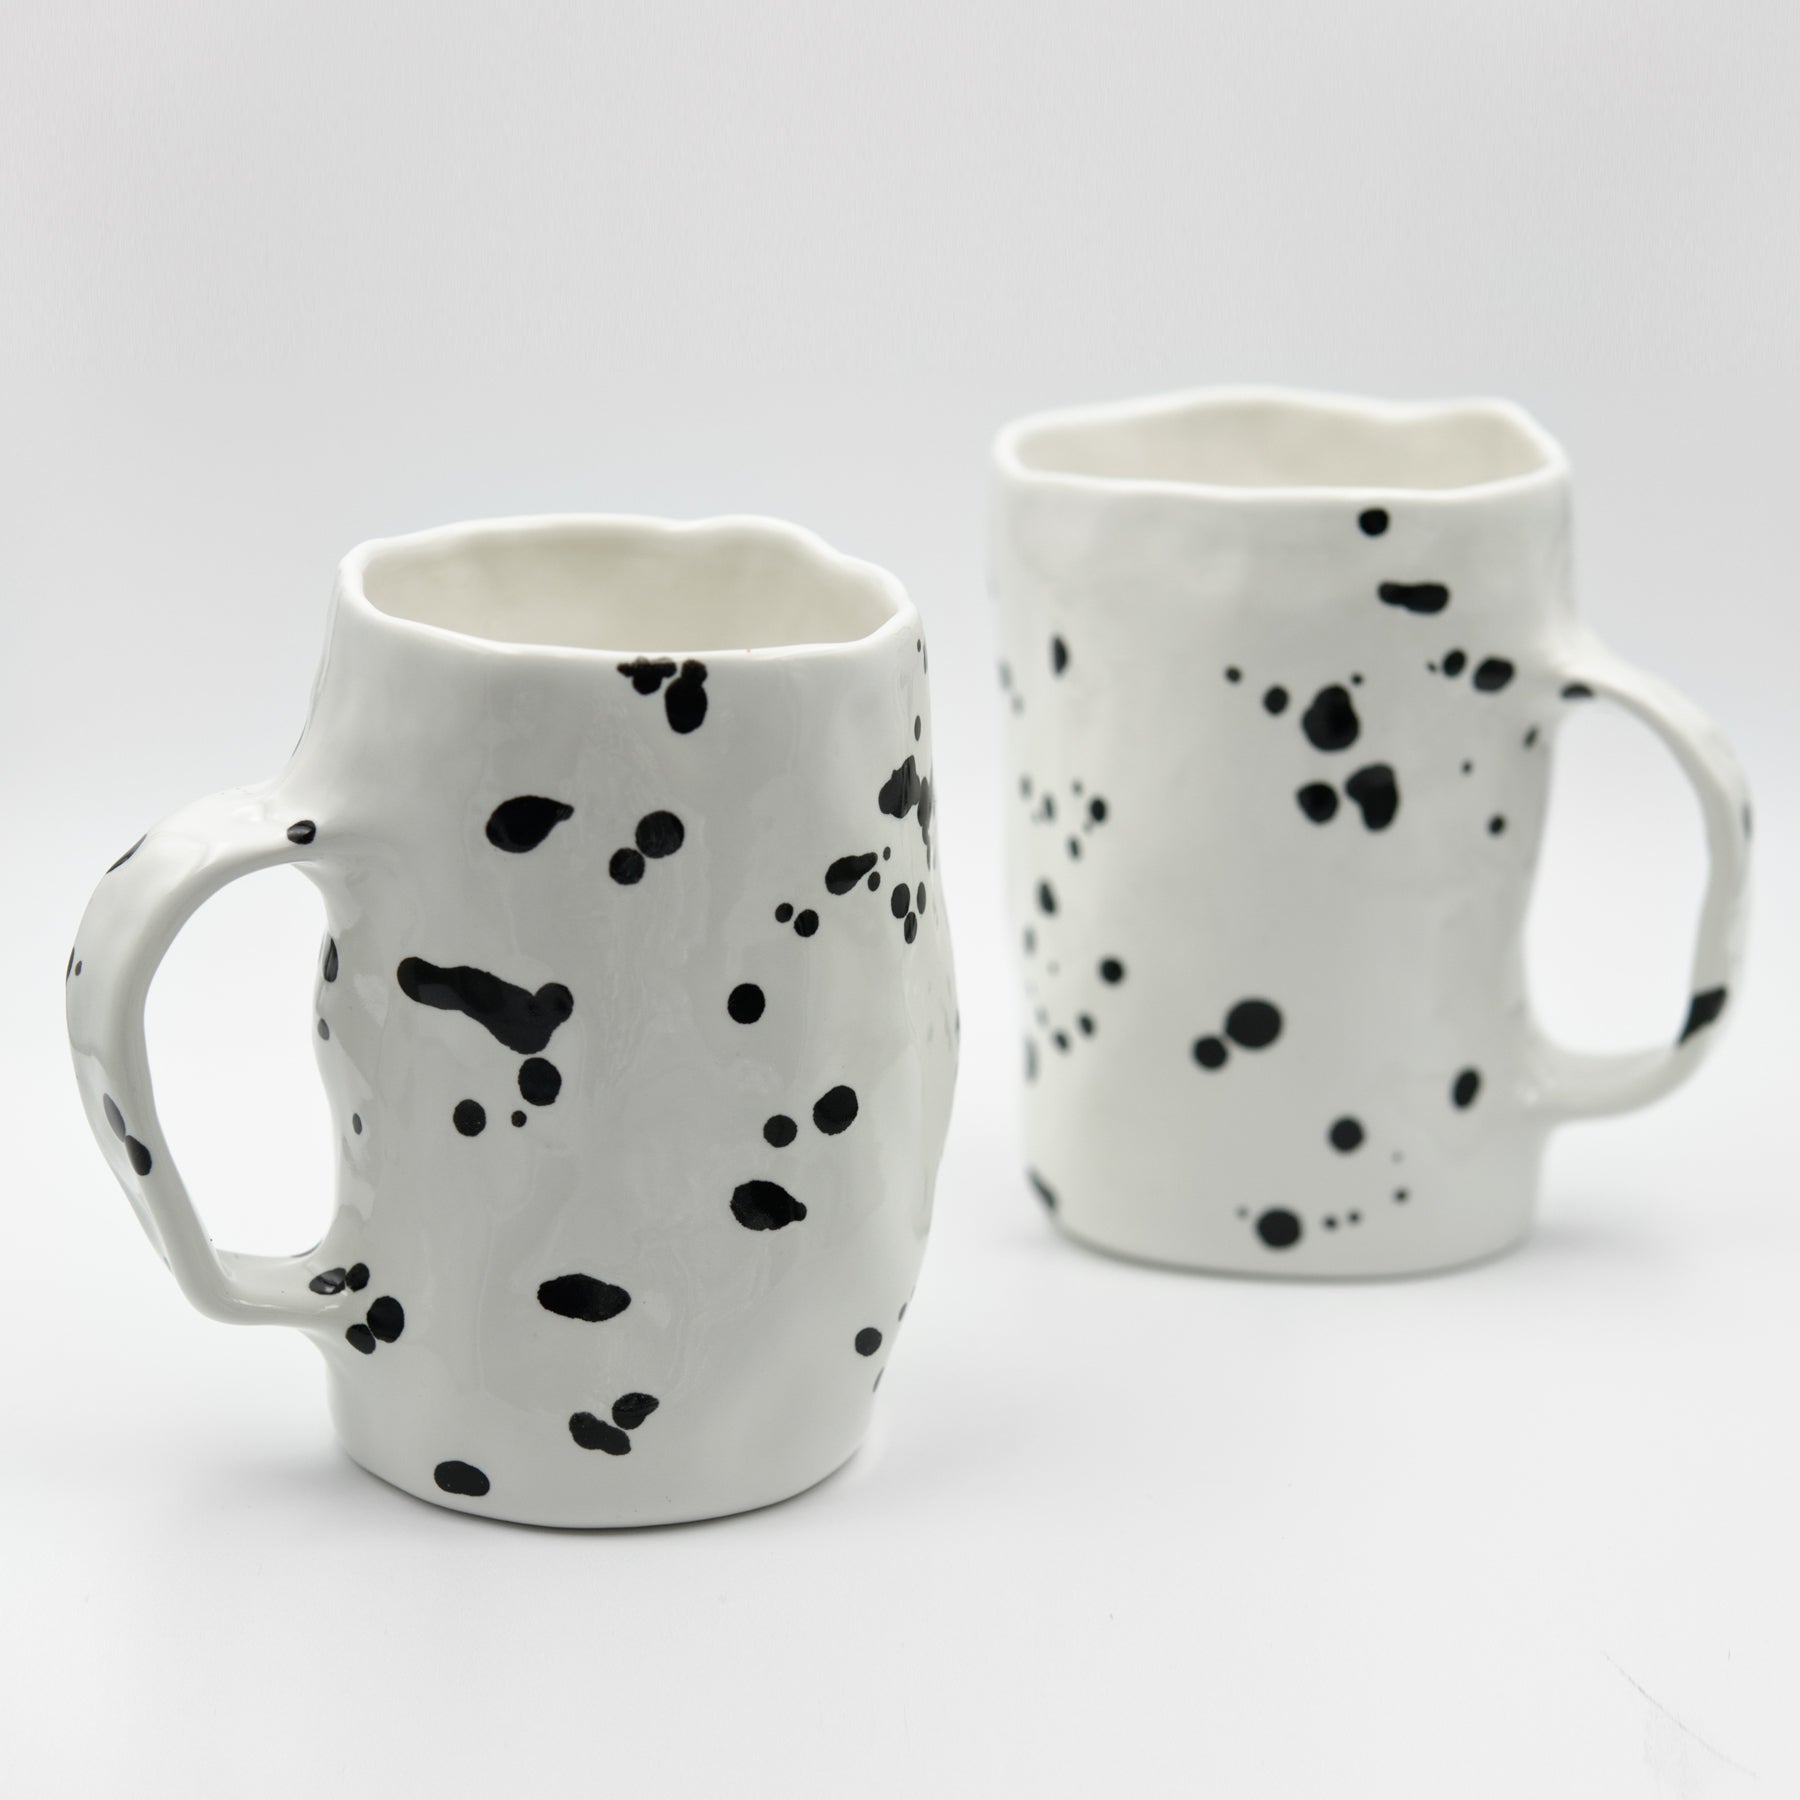 Pinched Dalmatian mug